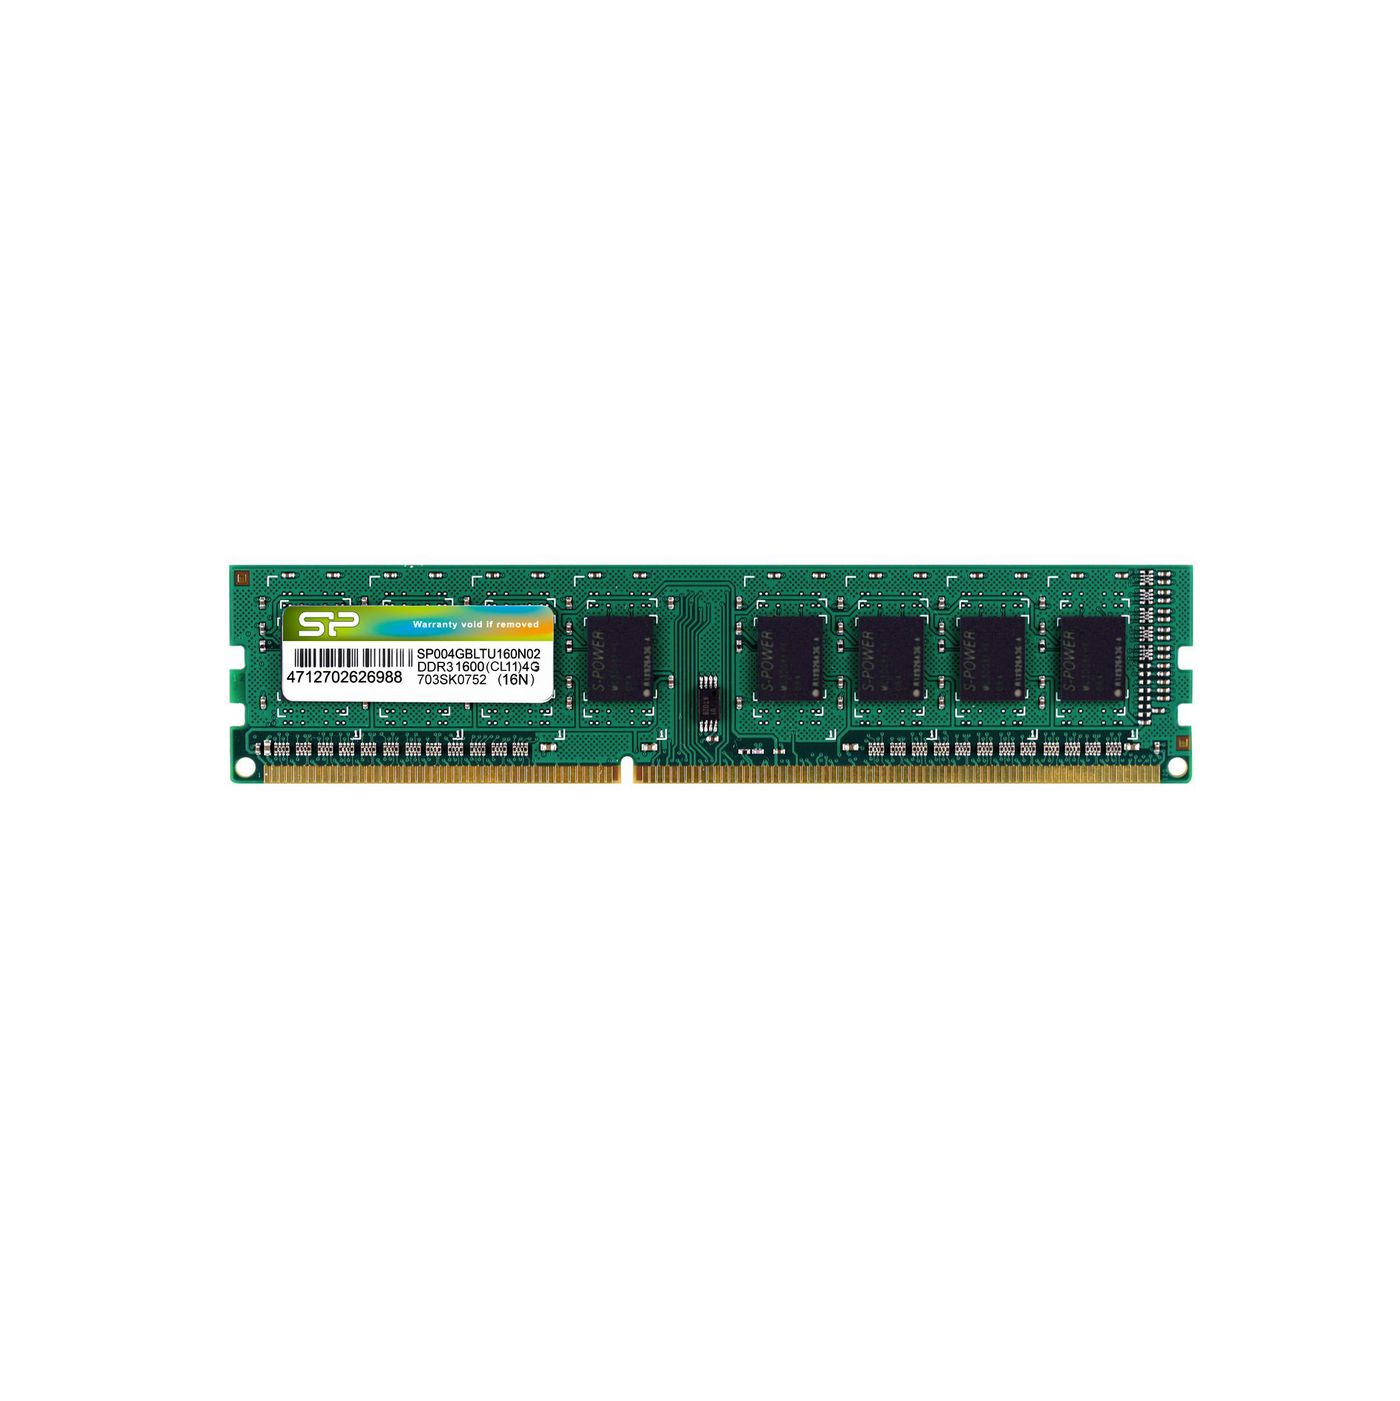 Silicon-Power SP004GBLTU160N02 W128267267 Memory Module 4 Gb Ddr3 1600 